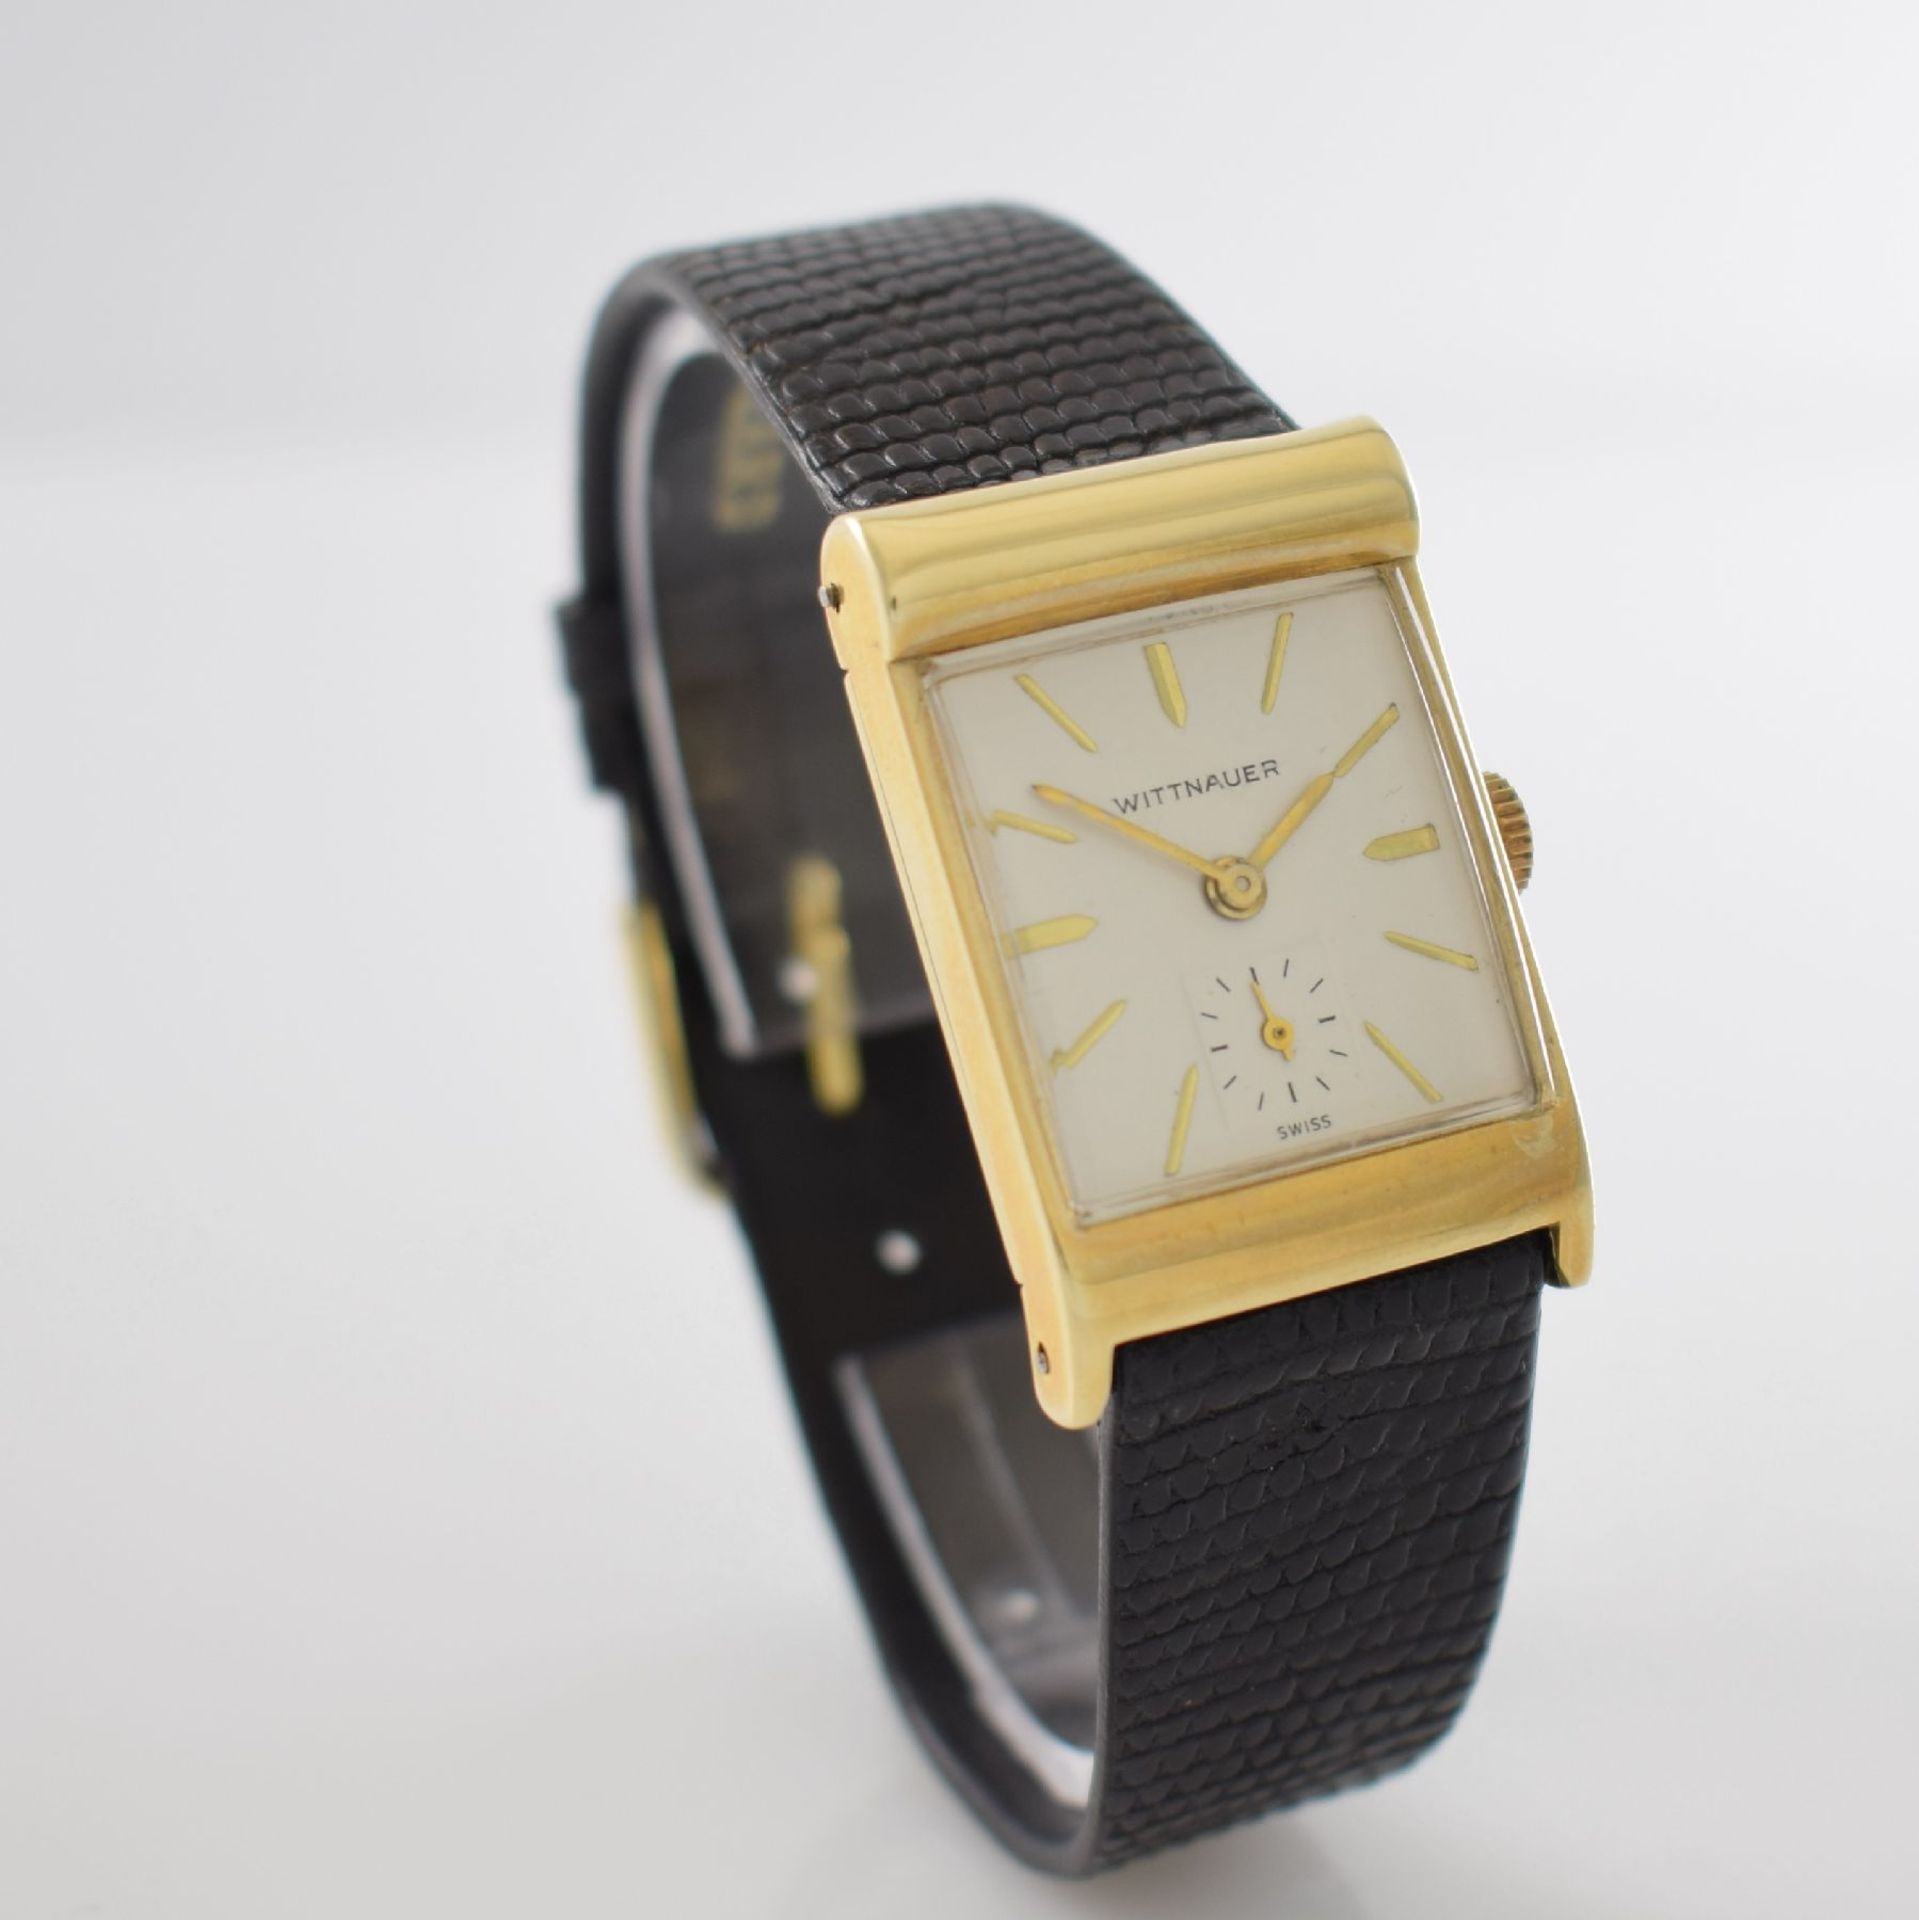 WITTNAUER asymmetrische rechteckige Armbanduhr in GG 585/000, USA/Schweiz um 1945, Handaufzug, 2- - Bild 5 aus 11